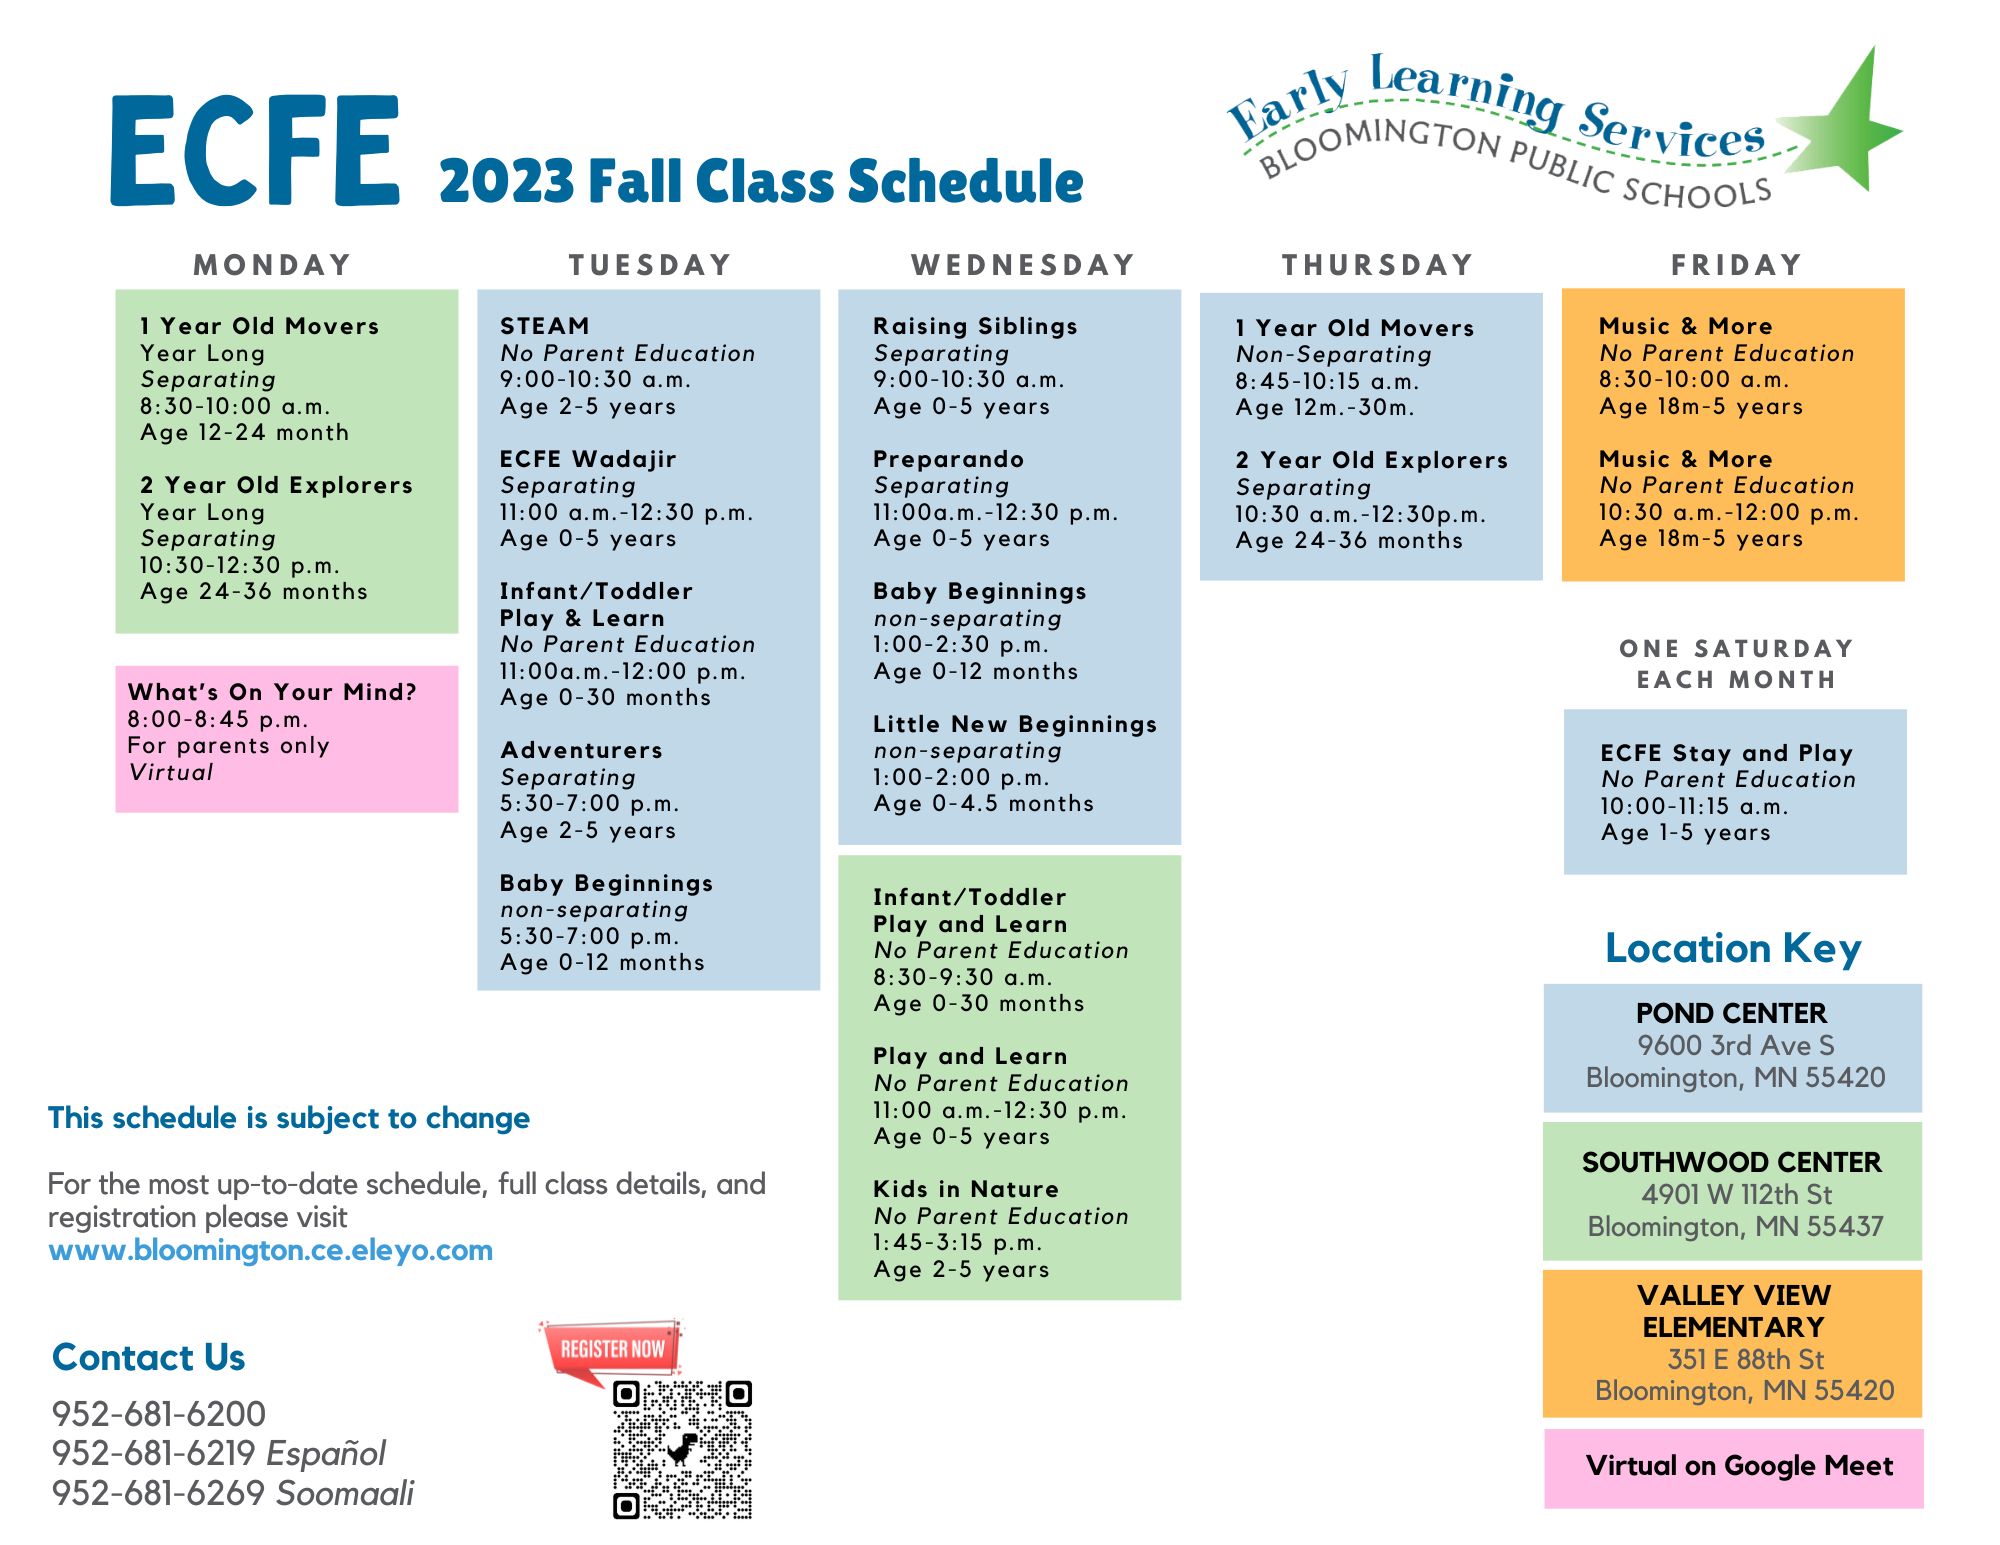 ECFE Fall 2023 Schedule Calendar